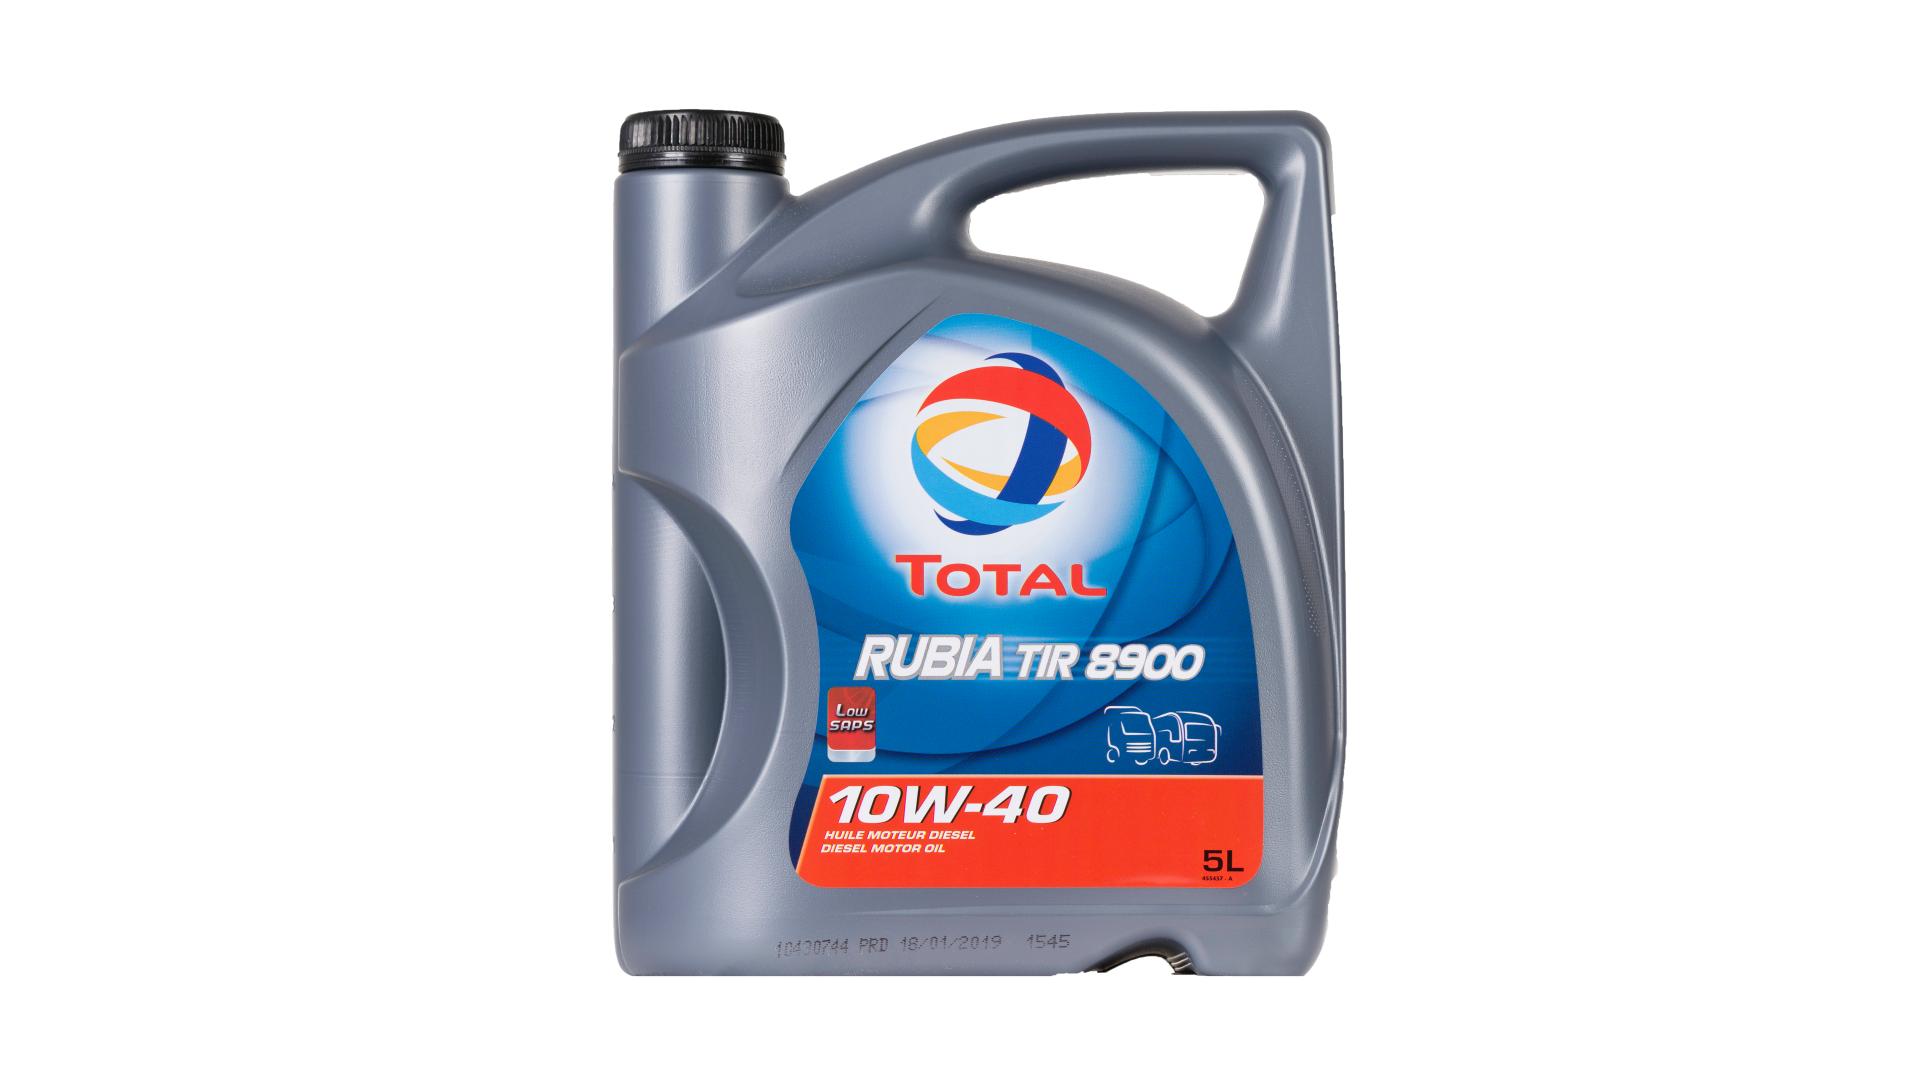 Total 10w-40 Rubia Tir 8600 5L (148590)